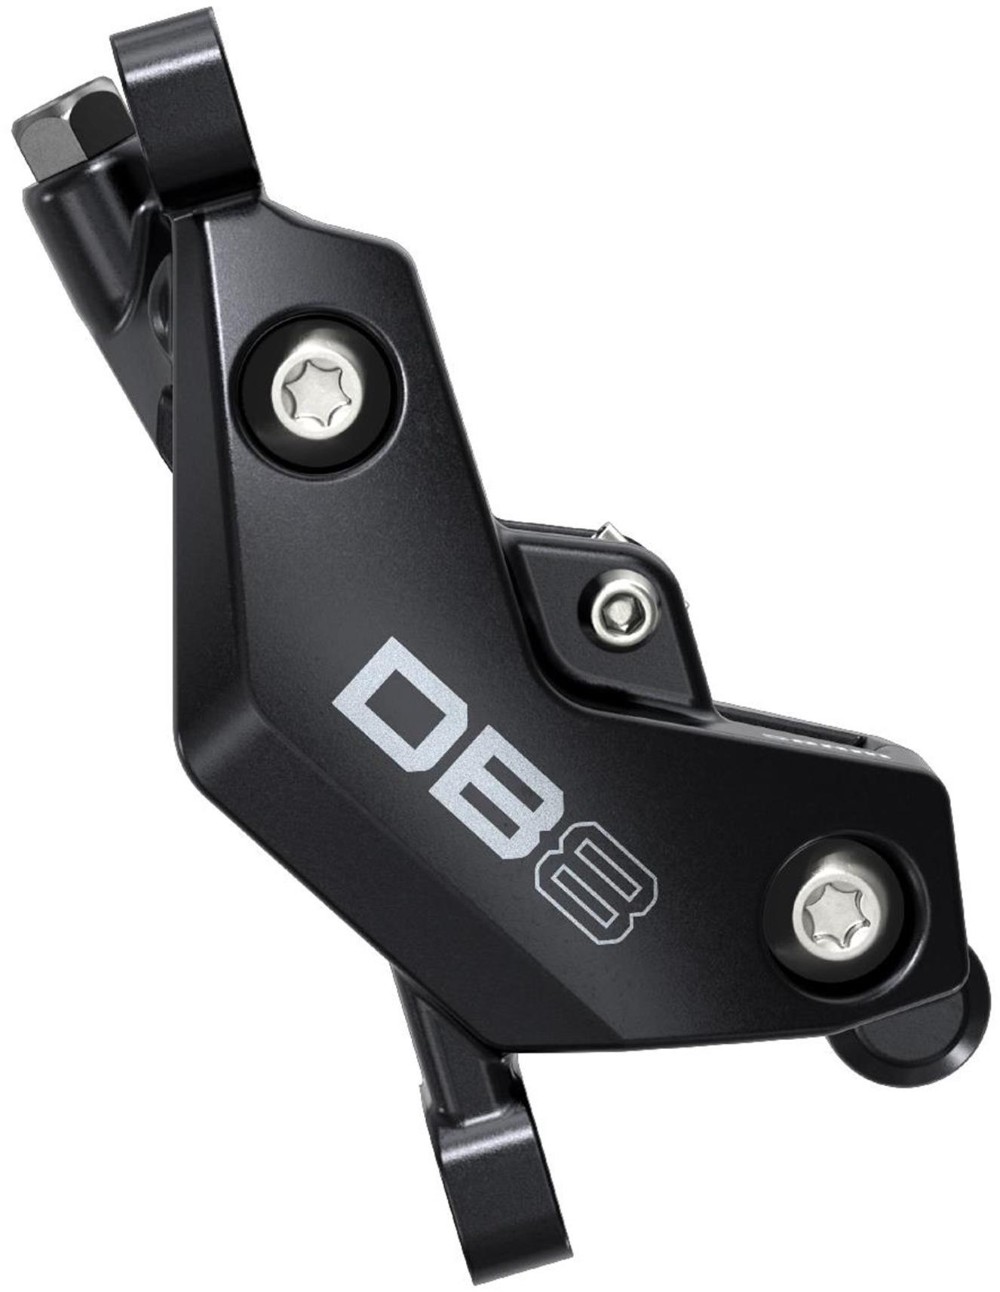 DB8 Disc Brake image 1